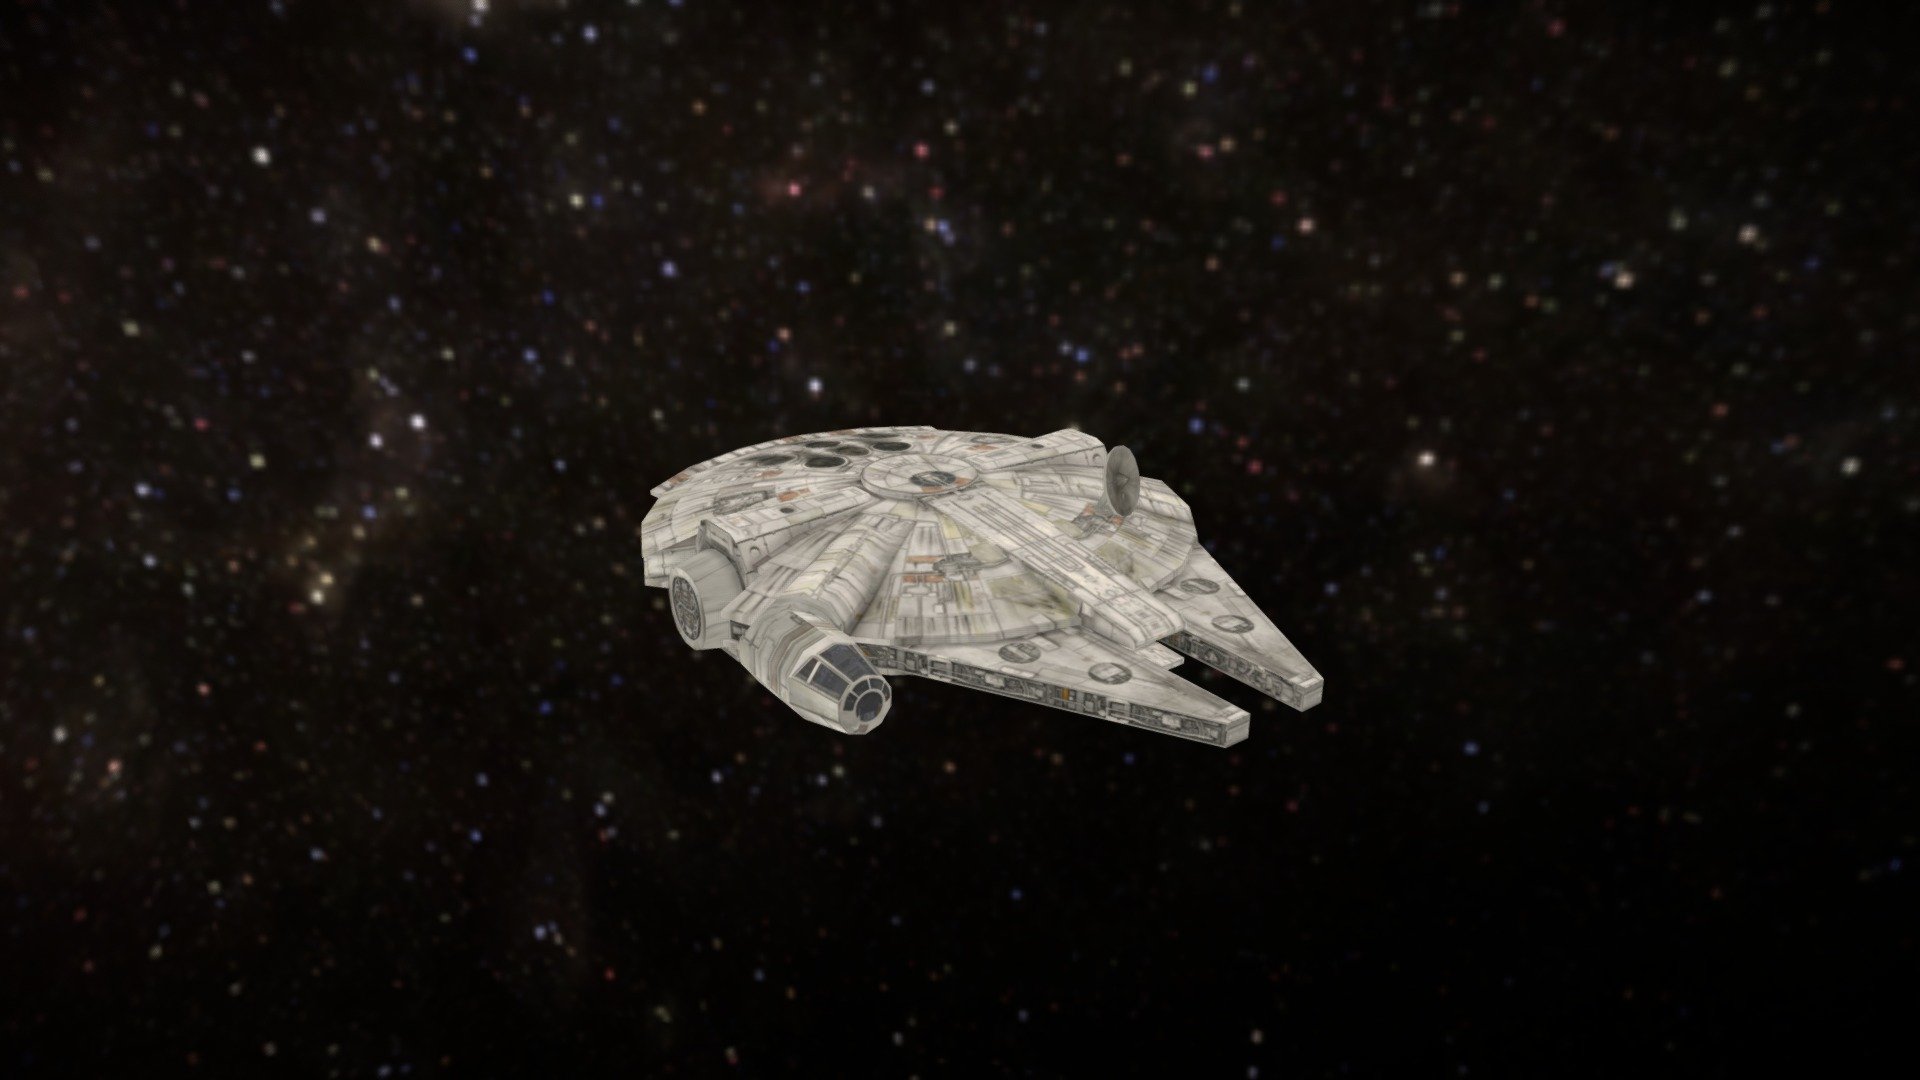 Star Wars - Halcon Milenario - Download Free 3D model by